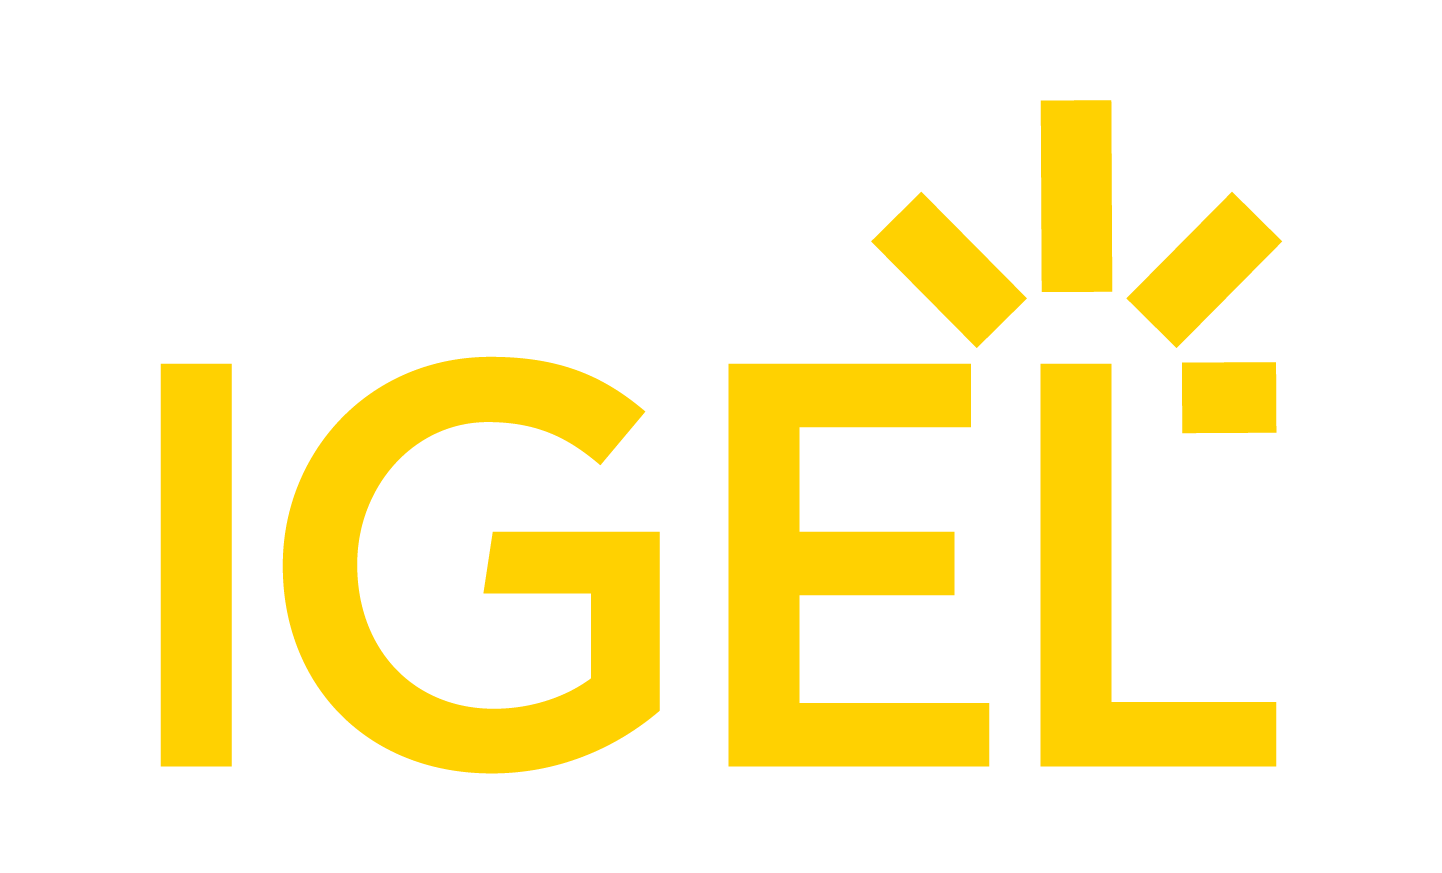 IGEL logo